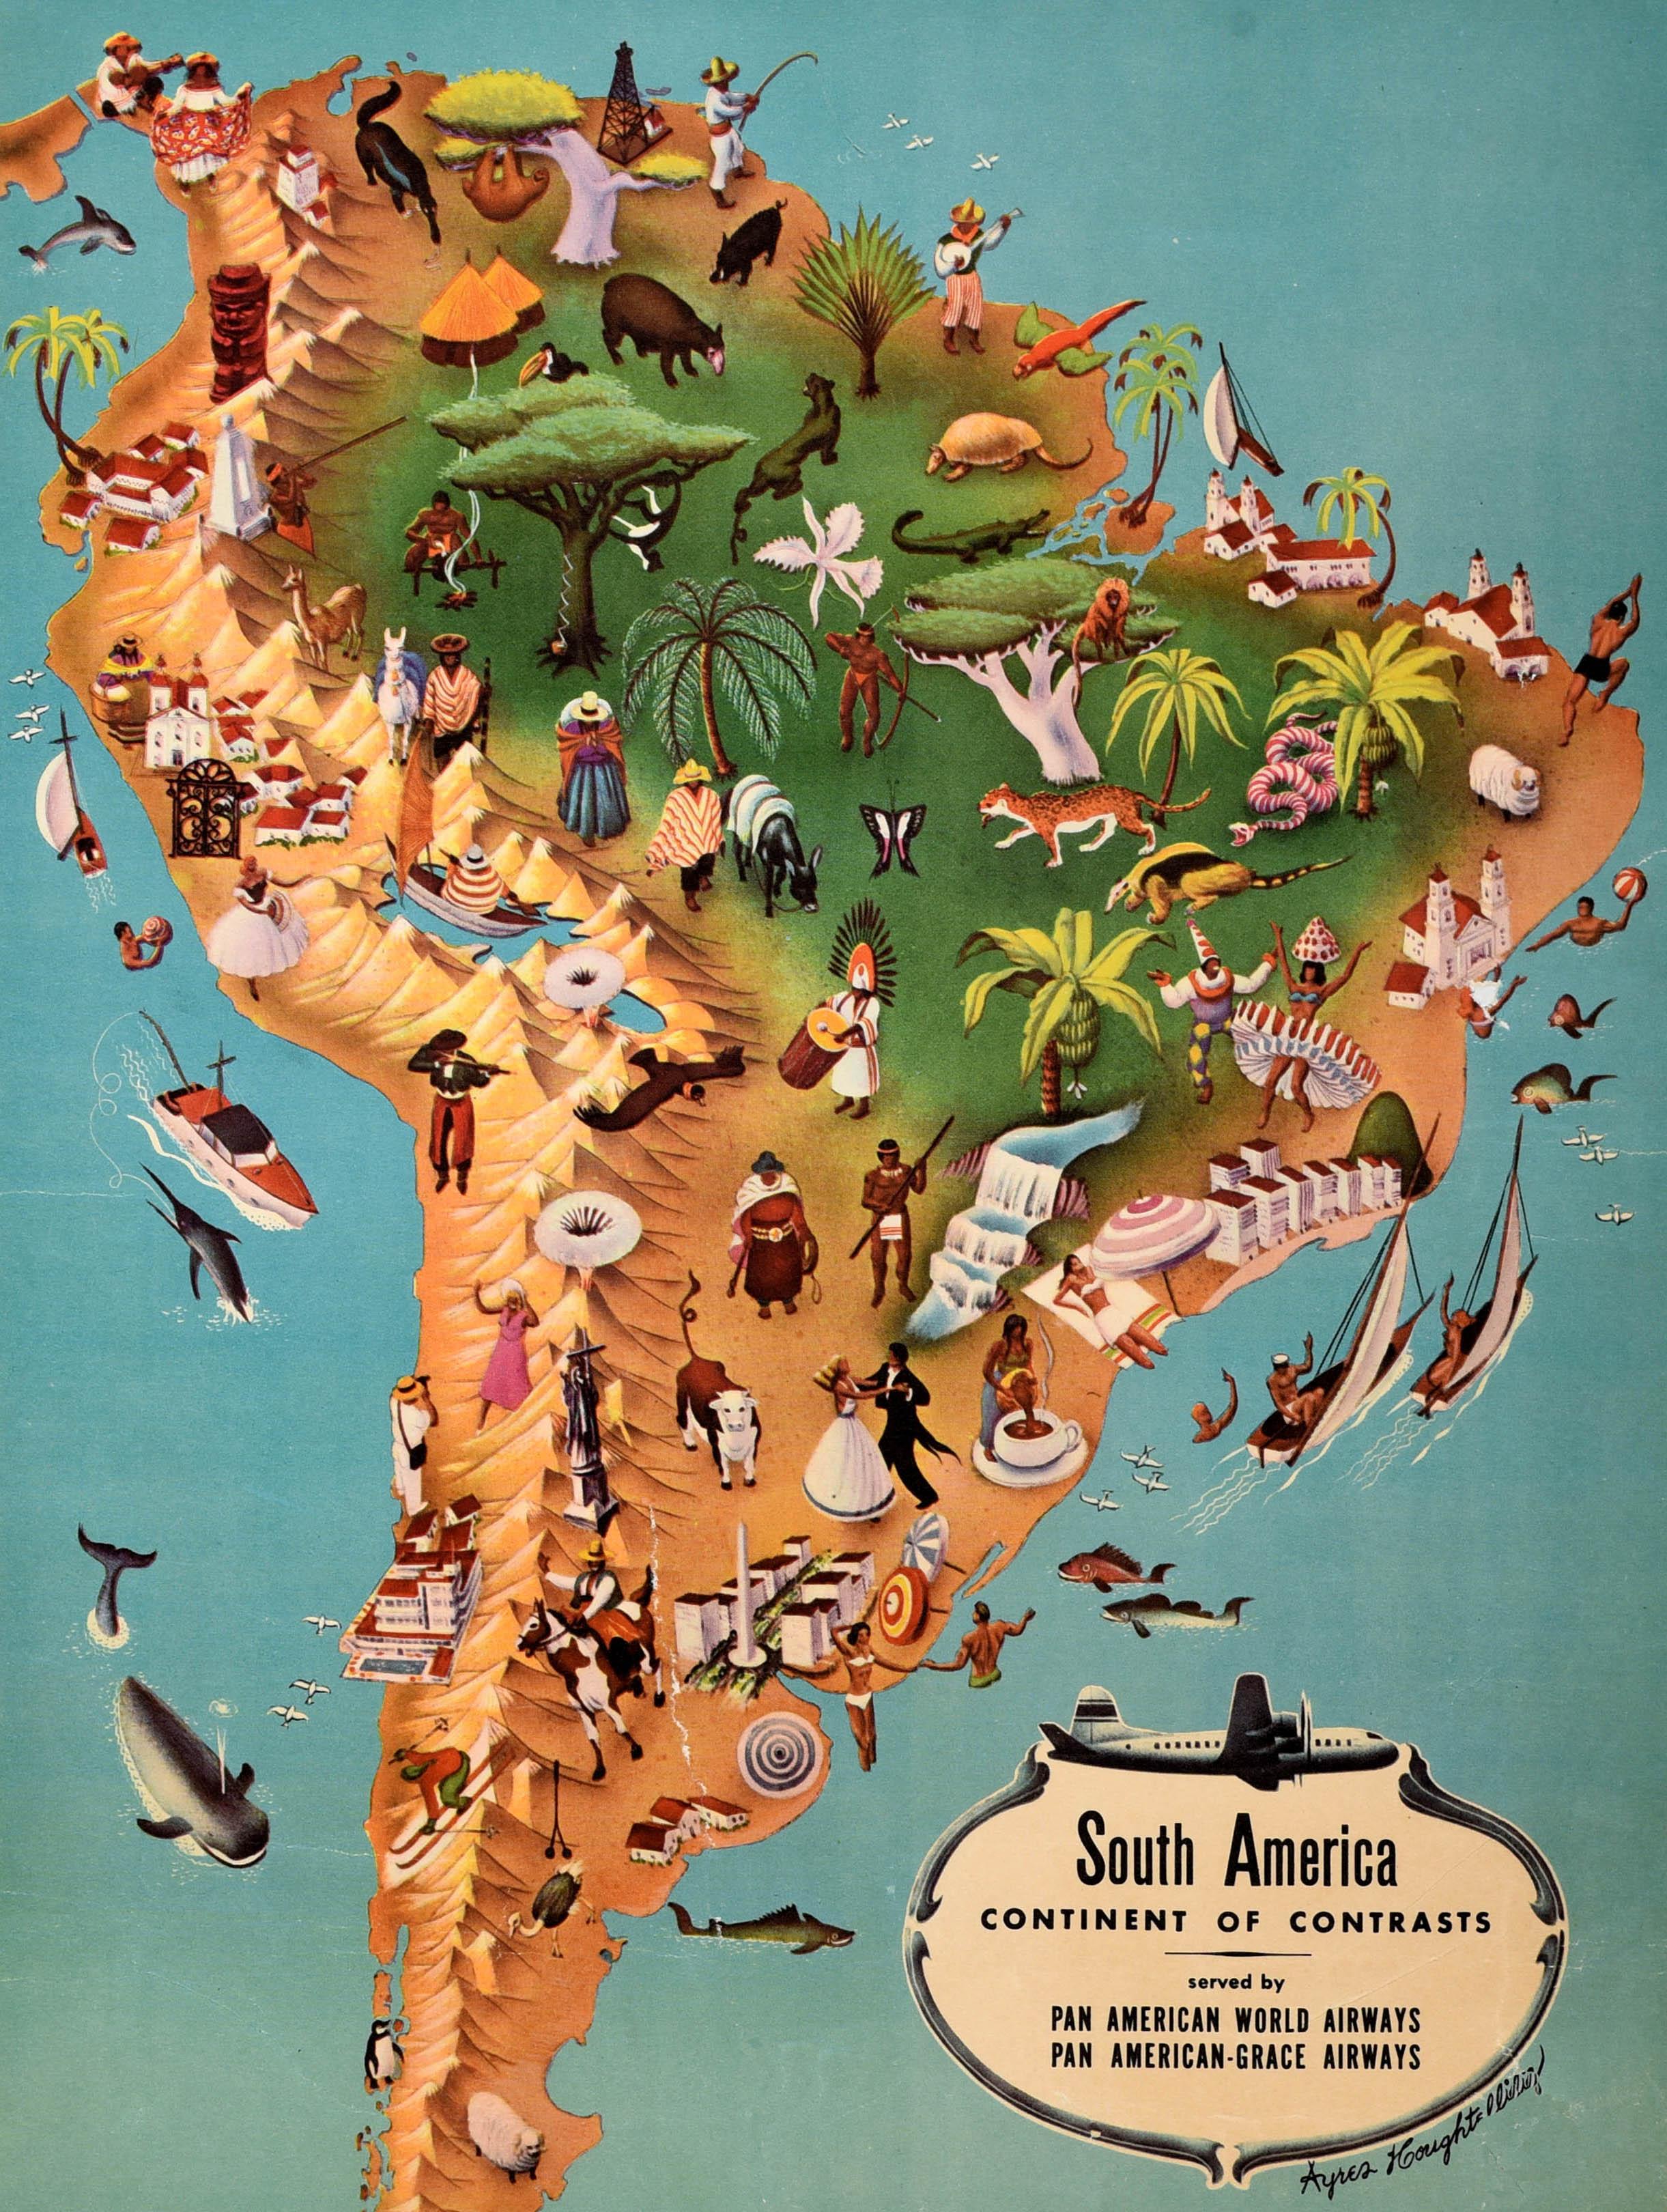 Affiche publicitaire originale d'époque de Pan Am - Amérique du Sud Continent de contrastes desservi par Pan American World Airways et Pan American Grace Airways - comportant une carte illustrée par Ayres Houghtelling (1912 - 2006) avec des